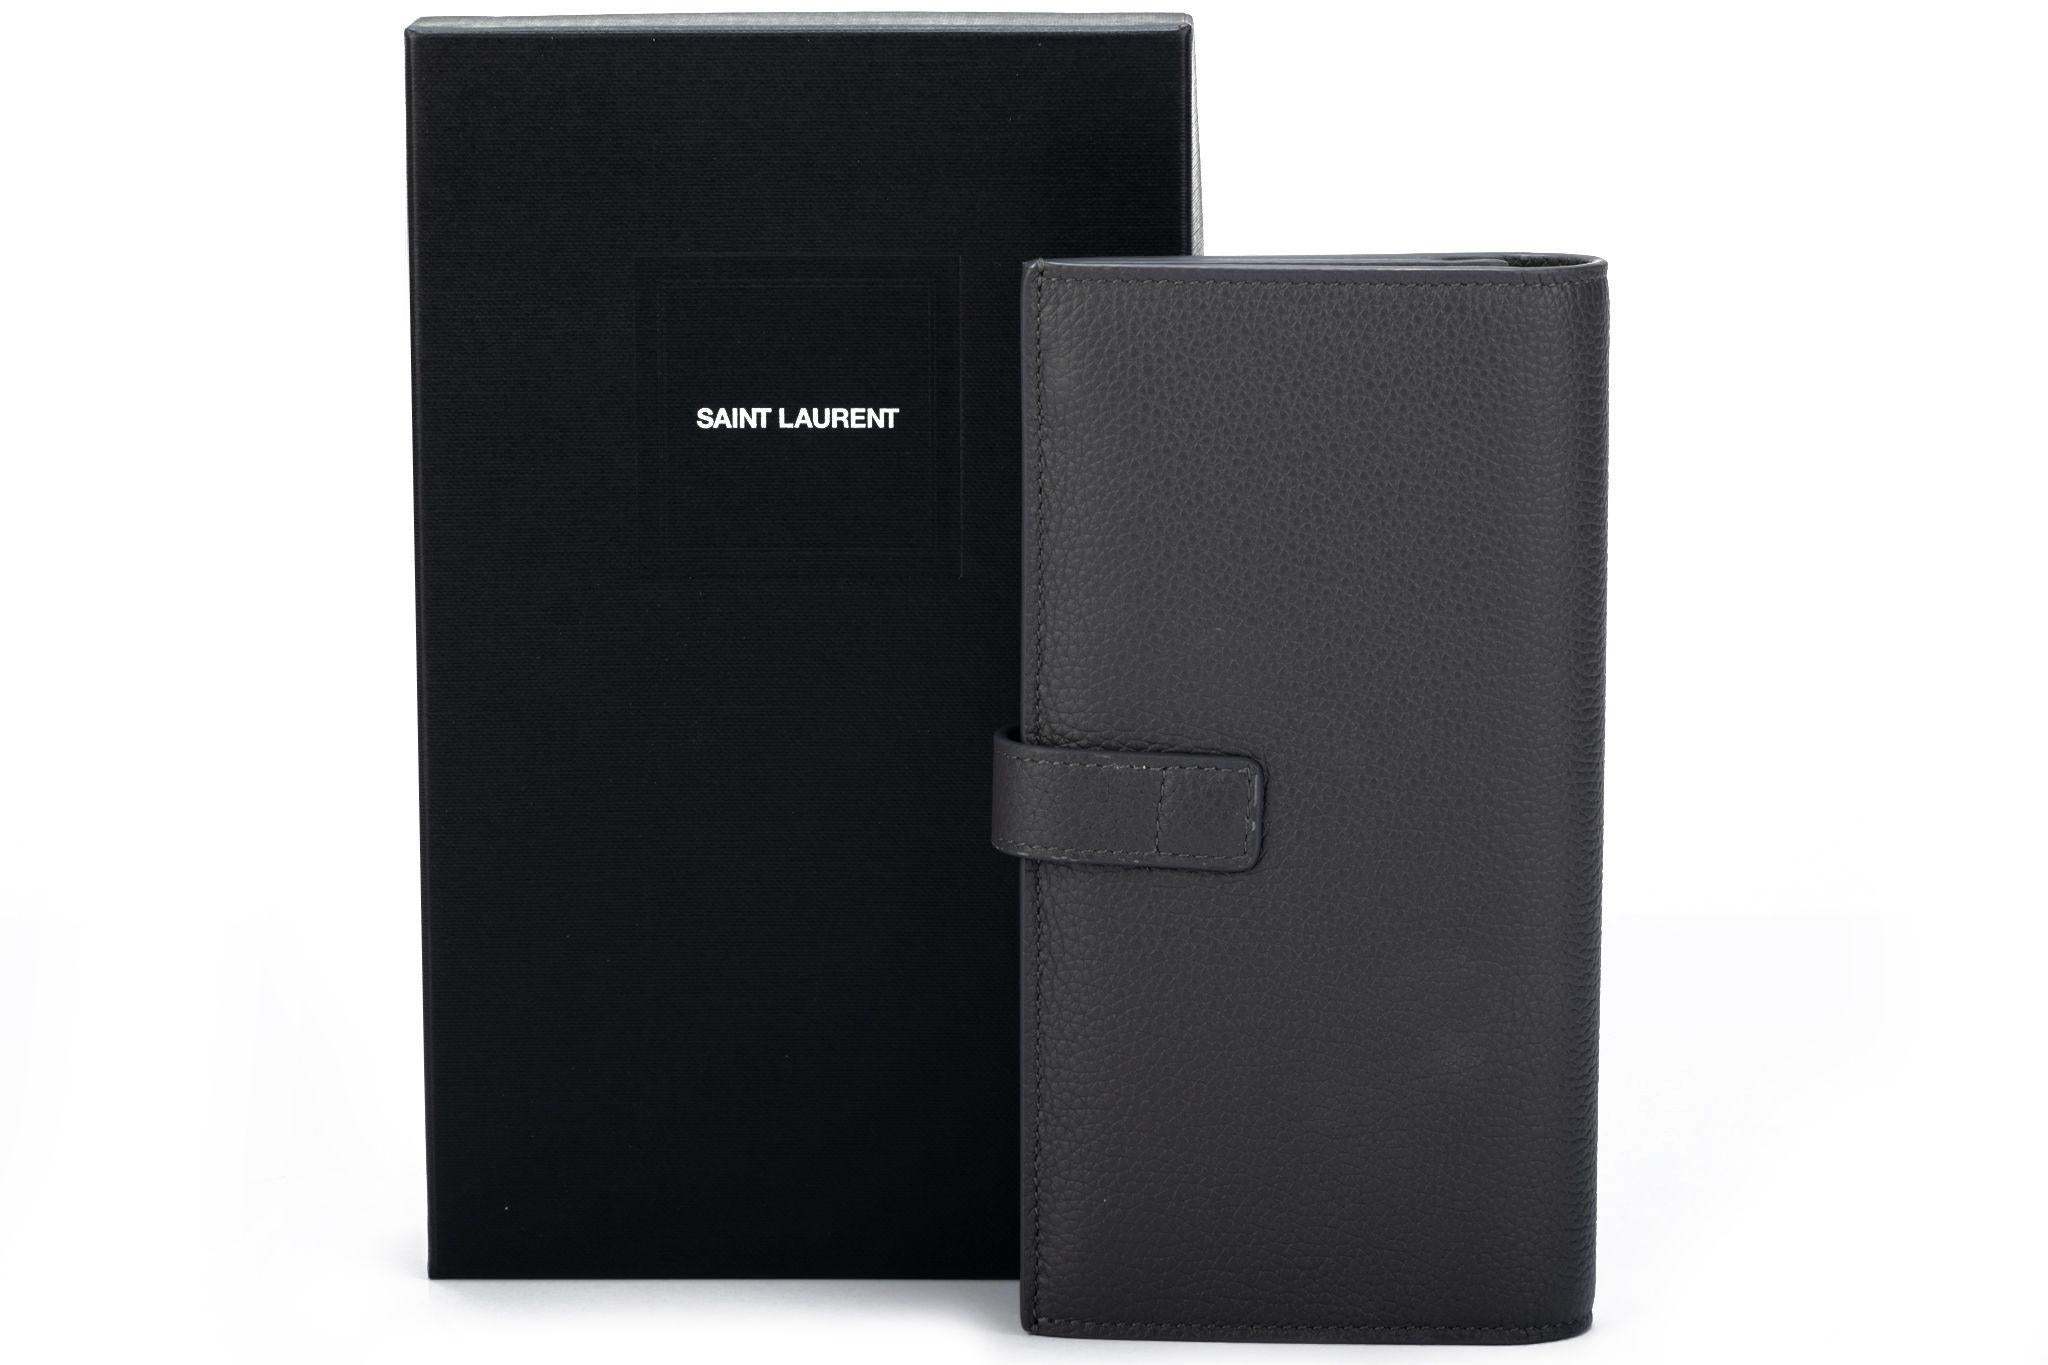 Yves Saint Laurent Brieftasche aus grauem Kieselleder mit gebürsteten silberfarbenen Beschlägen. Abnehmbares mittleres Kreditkartenfach. Kommt mit Originalverpackung.